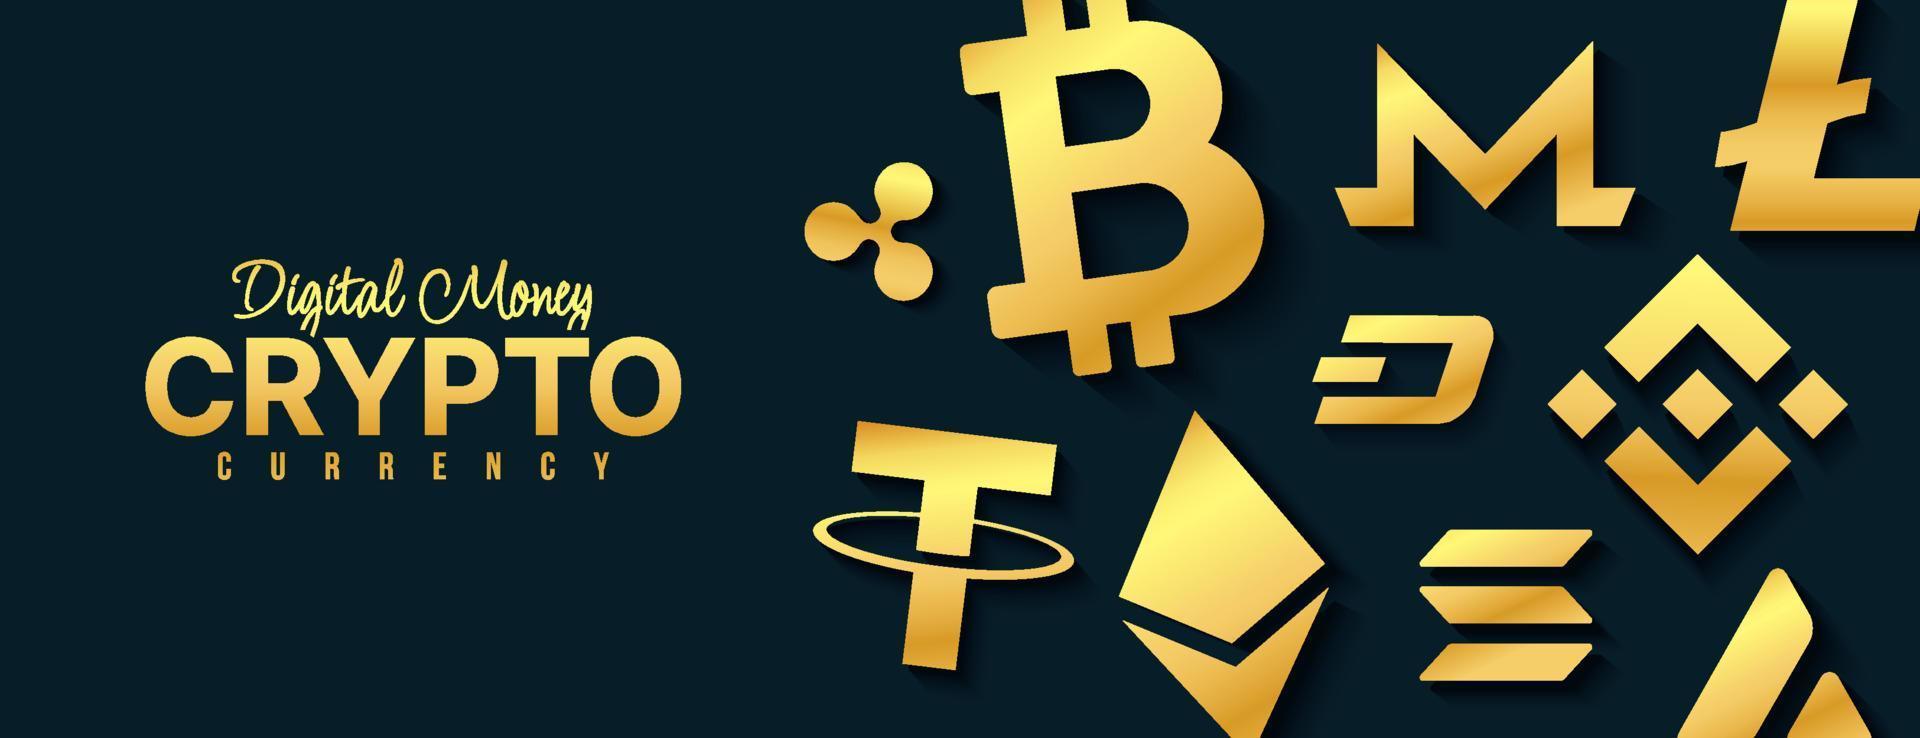 fond d'icônes de crypto-monnaie, échange d'argent numérique de la bannière de la technologie blockchain, exploitation minière de crypto-monnaie et concept financier vecteur